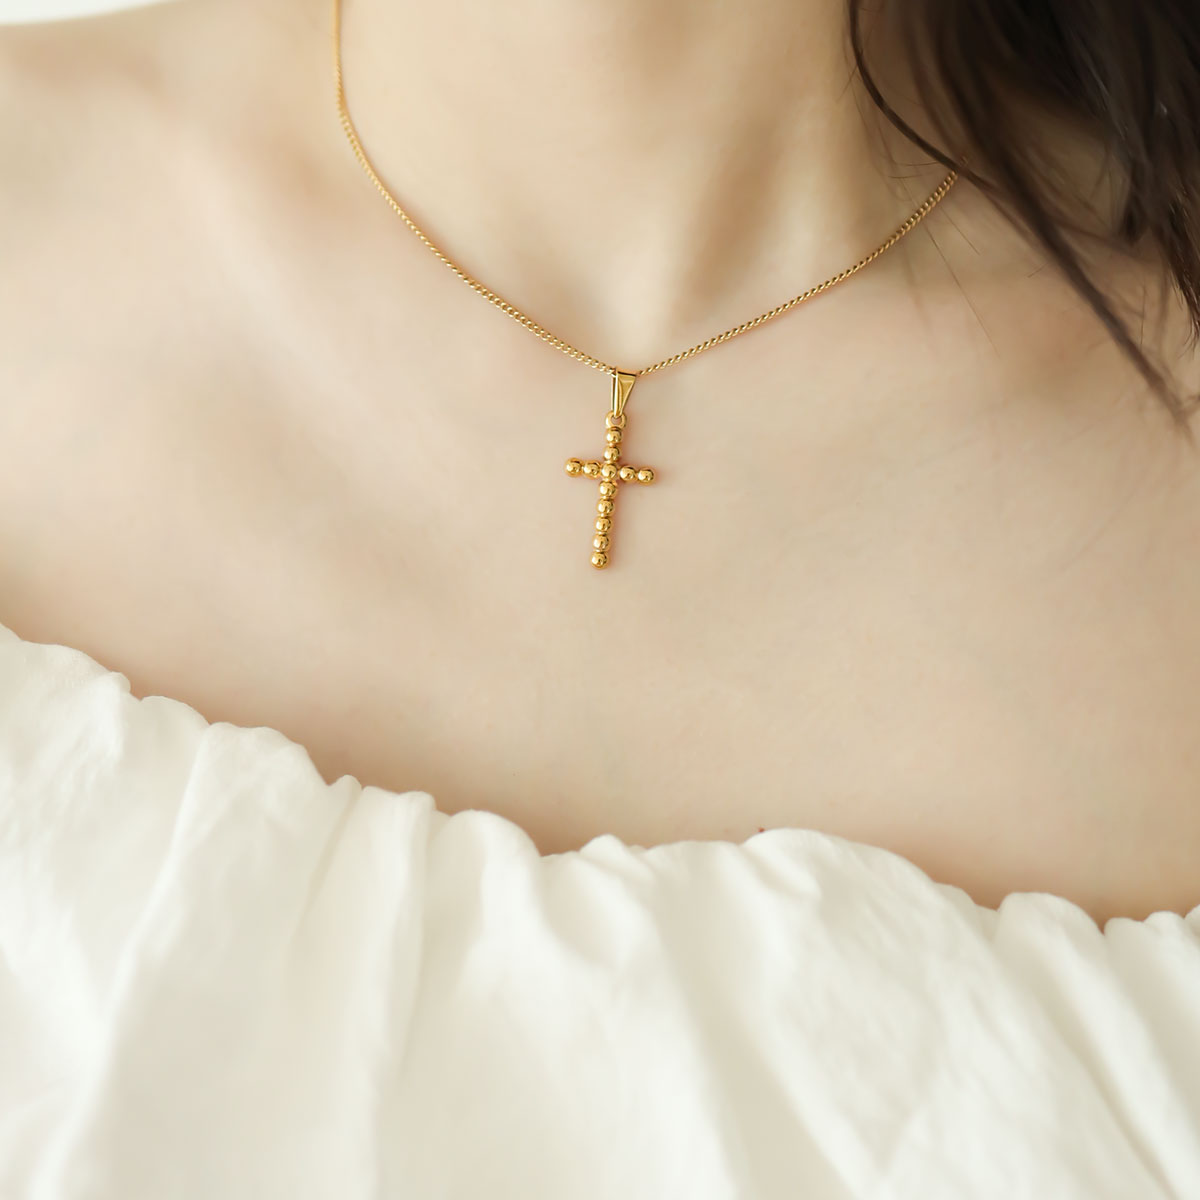 Women wear gold cross necklace.